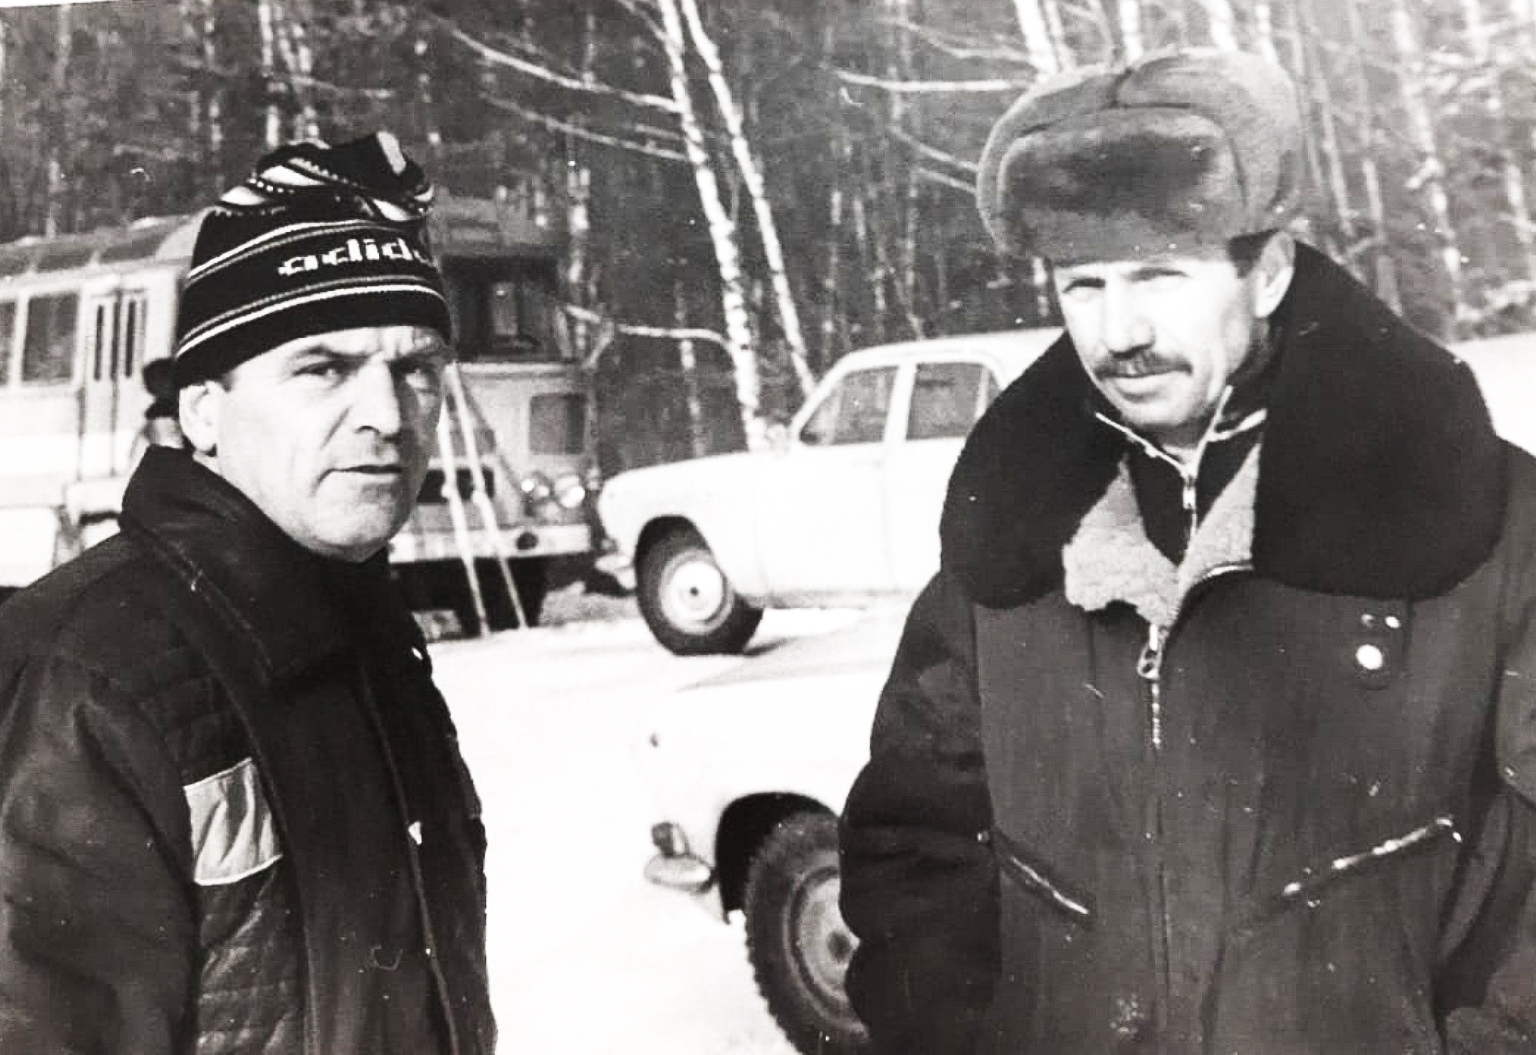 Юрий Изотов (слева) любил спорт. Занимался профессионально лыжами, имел спортивный разряд — кандидат в мастера спорта